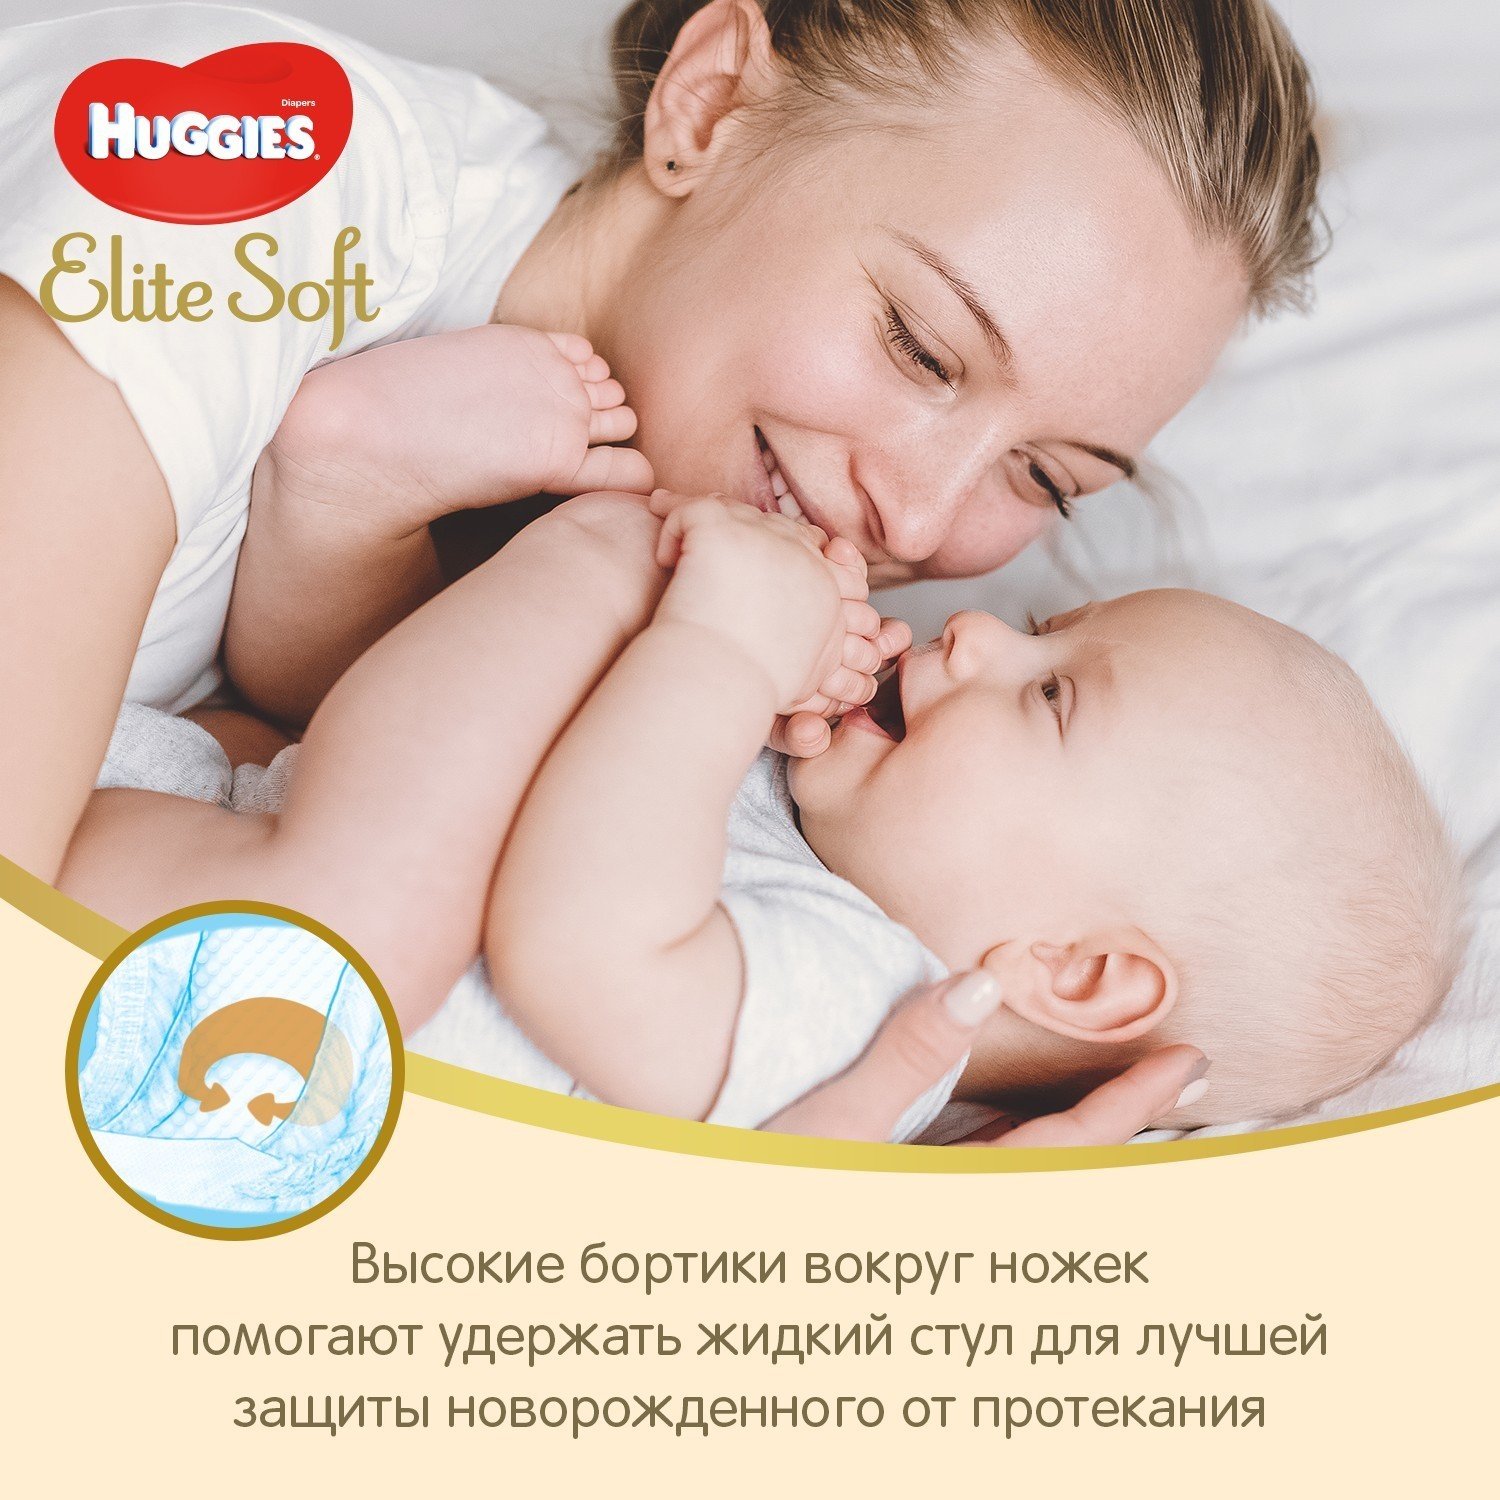 Подгузники Huggies Elite Soft для новорожденных 1 3-5кг 25шт